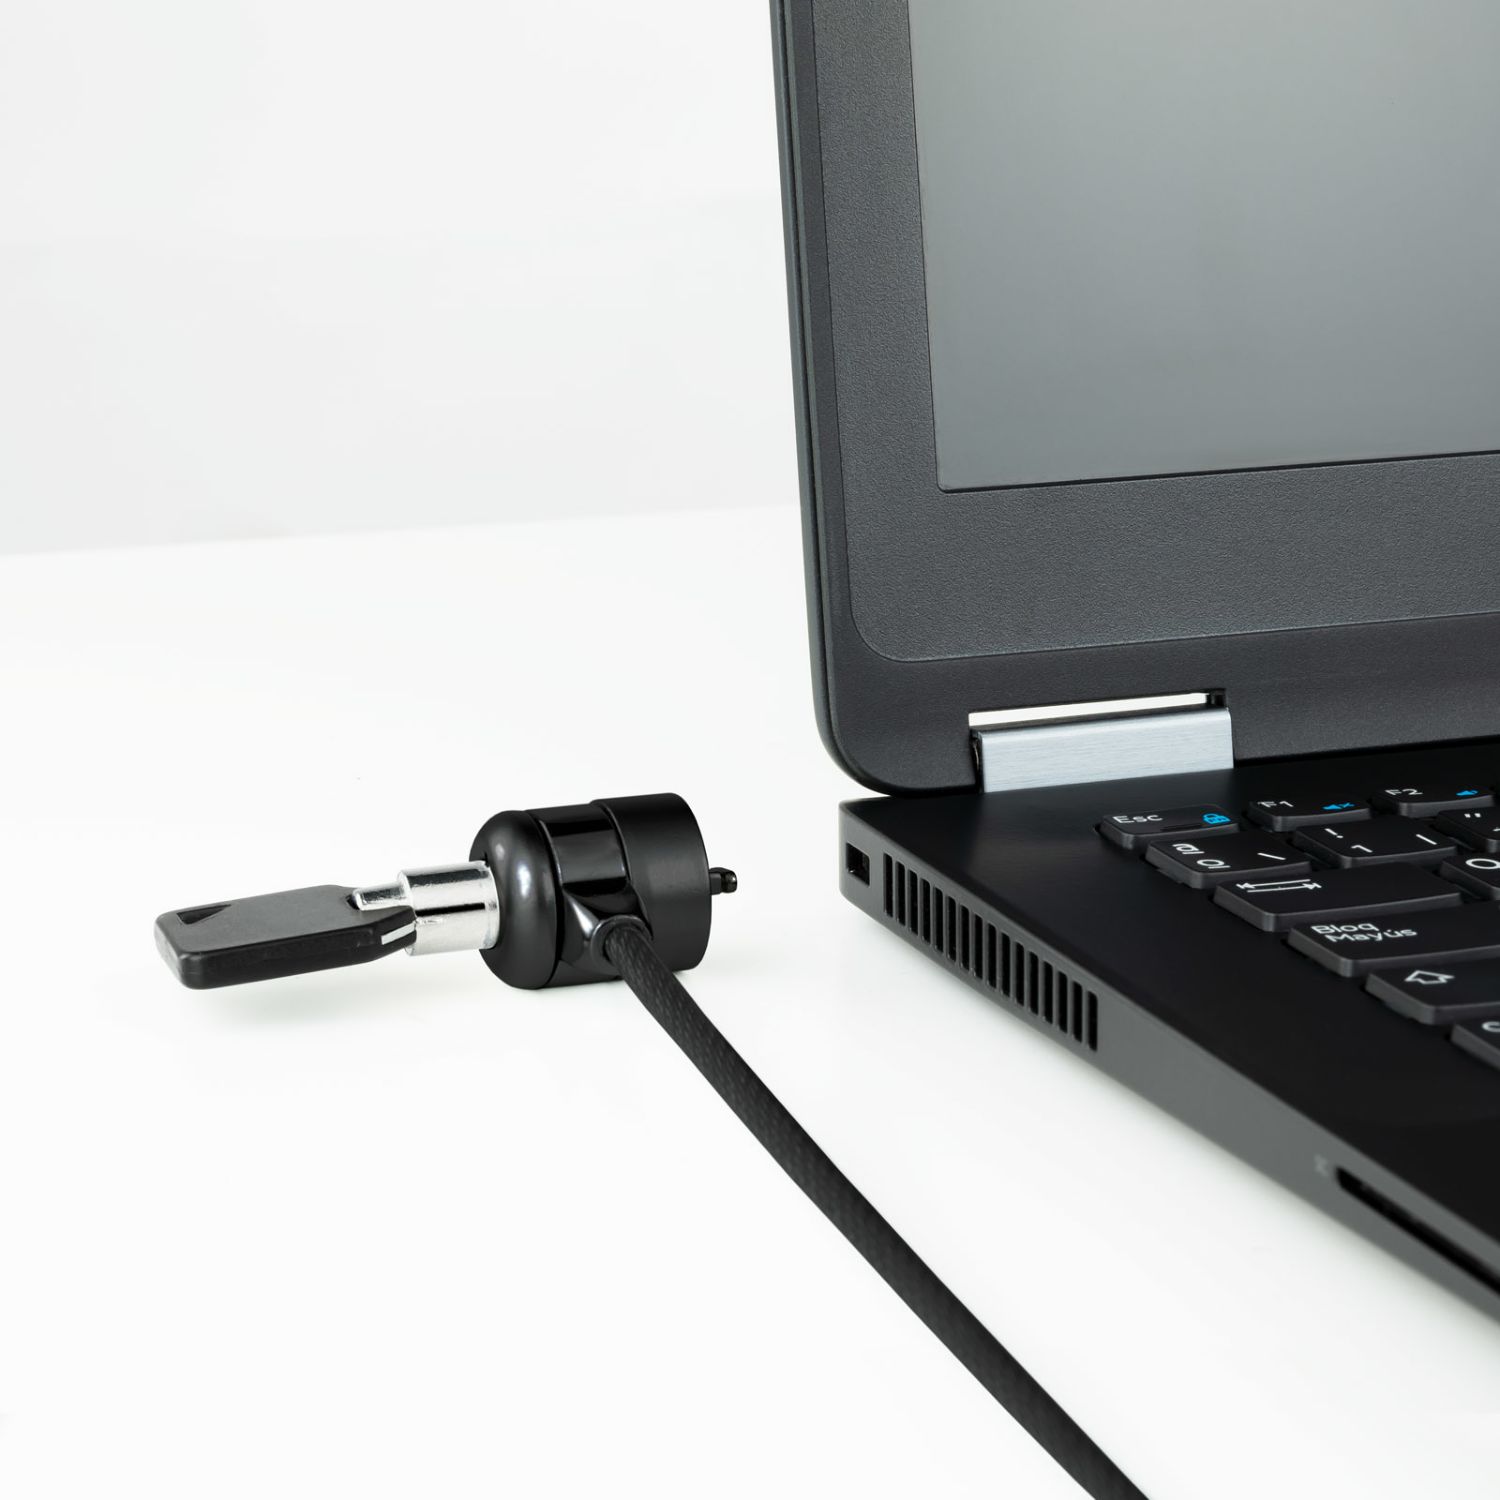 TQCLKC0025-G - Cable de Seguridad TOOQ para portatiles, 1.5m, Bloqueo con cerradura de seguridad, gris oscuro,  (TQCLKC0025-G)